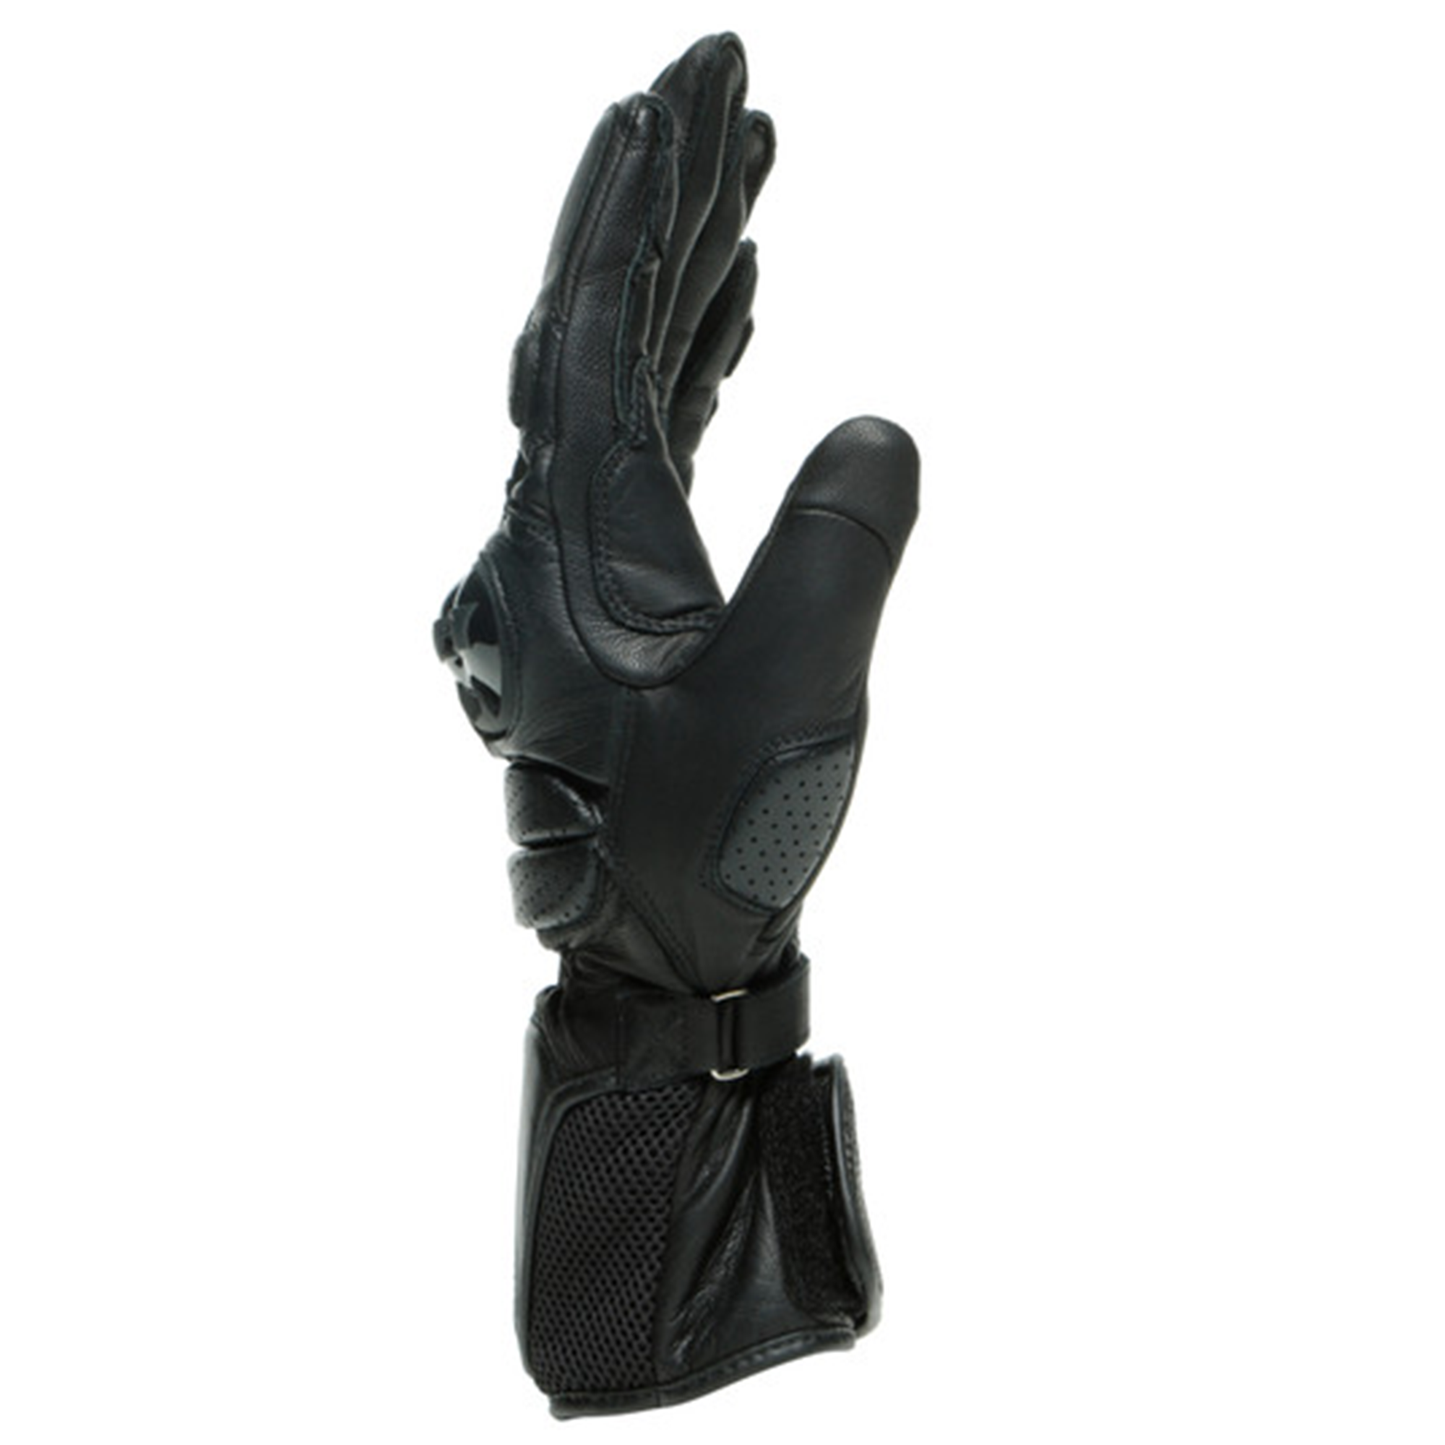 Dainese Impeto Gloves - Black/Black